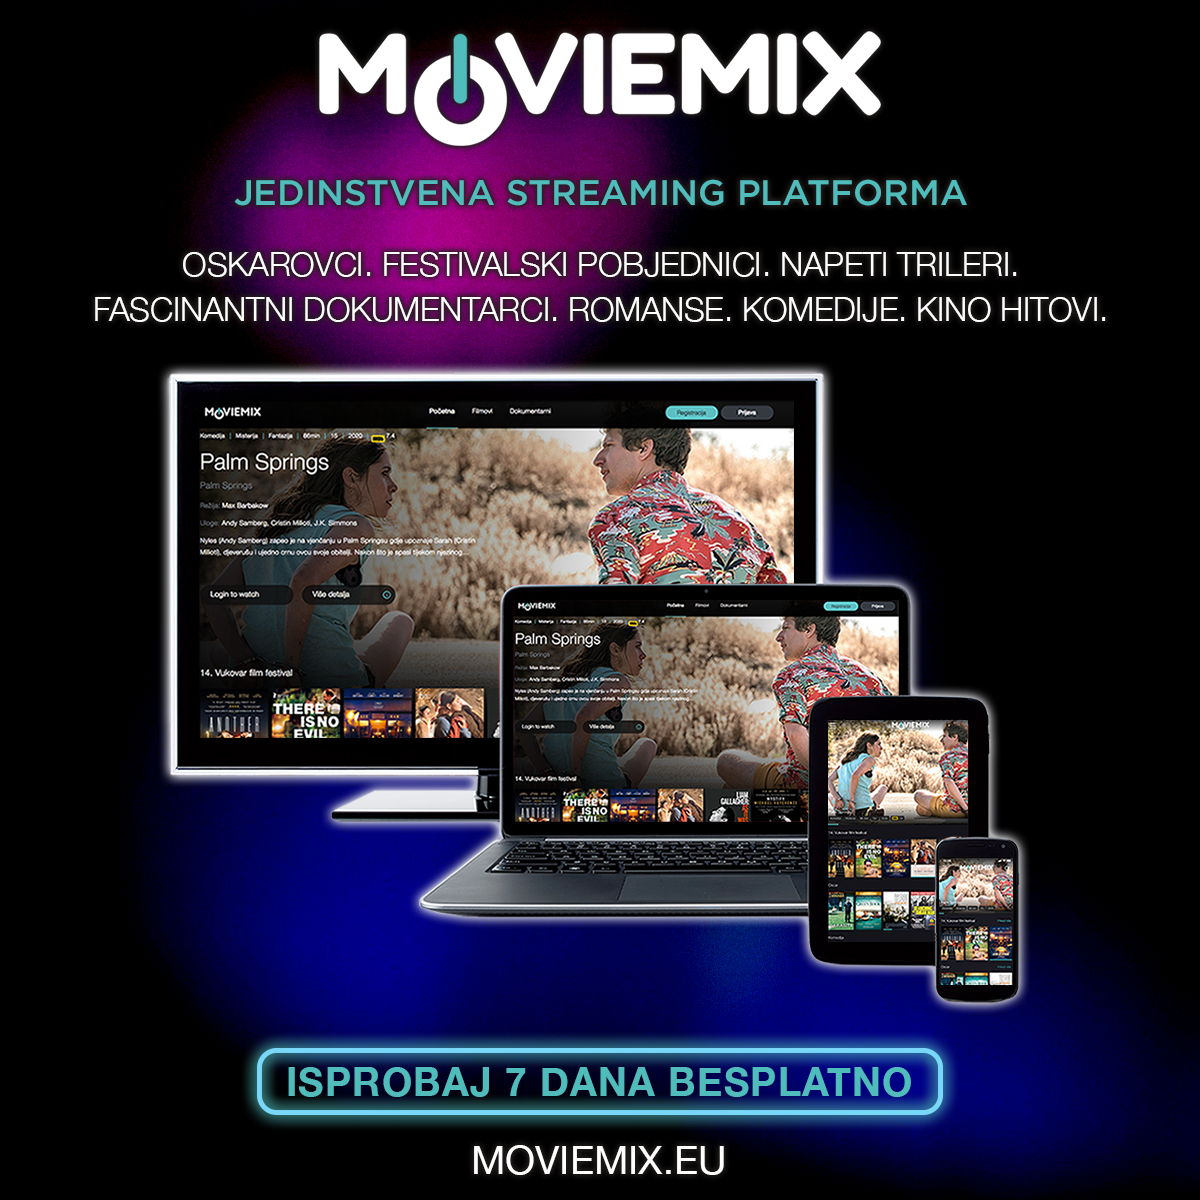 MovieMix – potpuno drugačija filmska platforma!